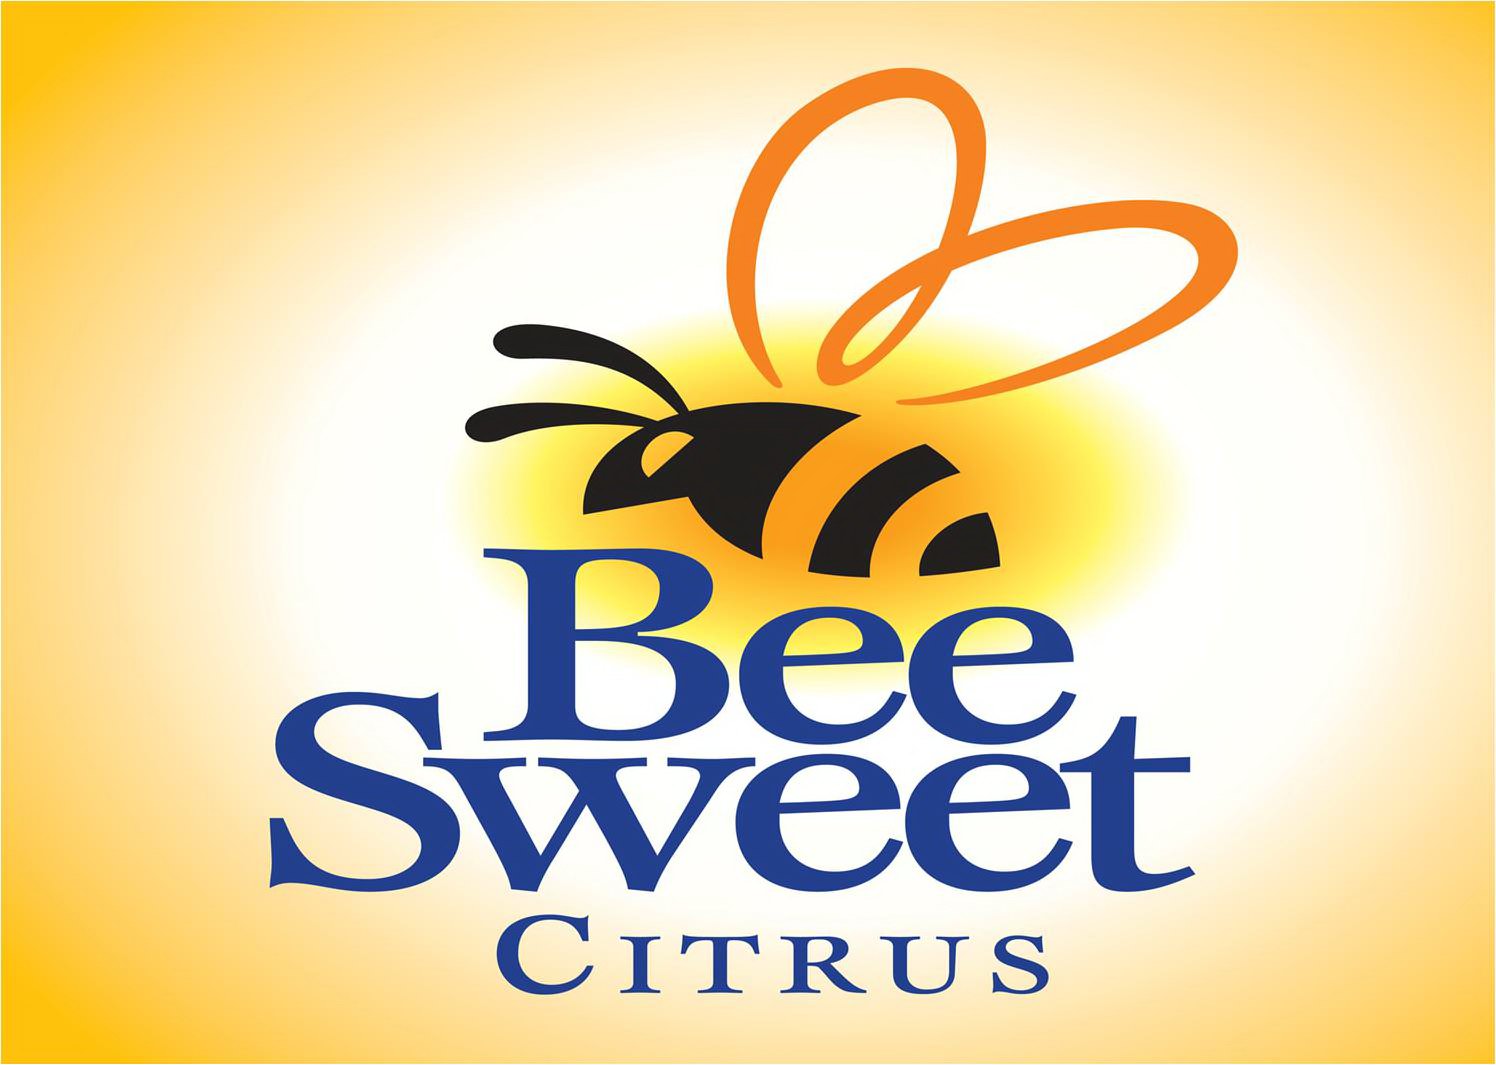  BEE SWEET CITRUS